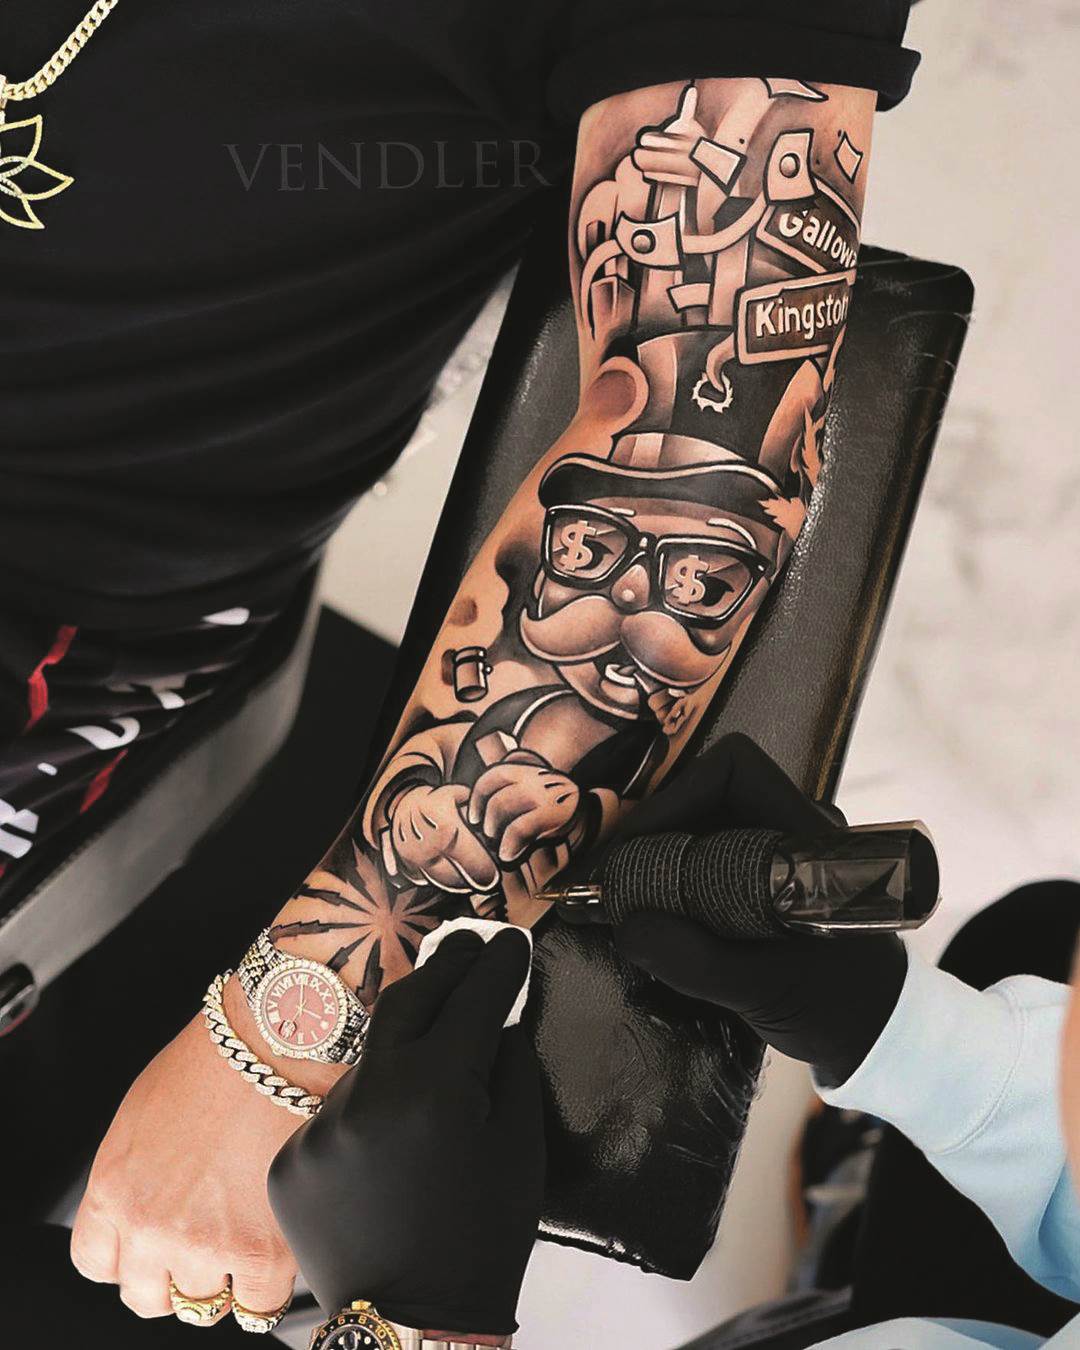 Tetovaža Kristiana Vendlera